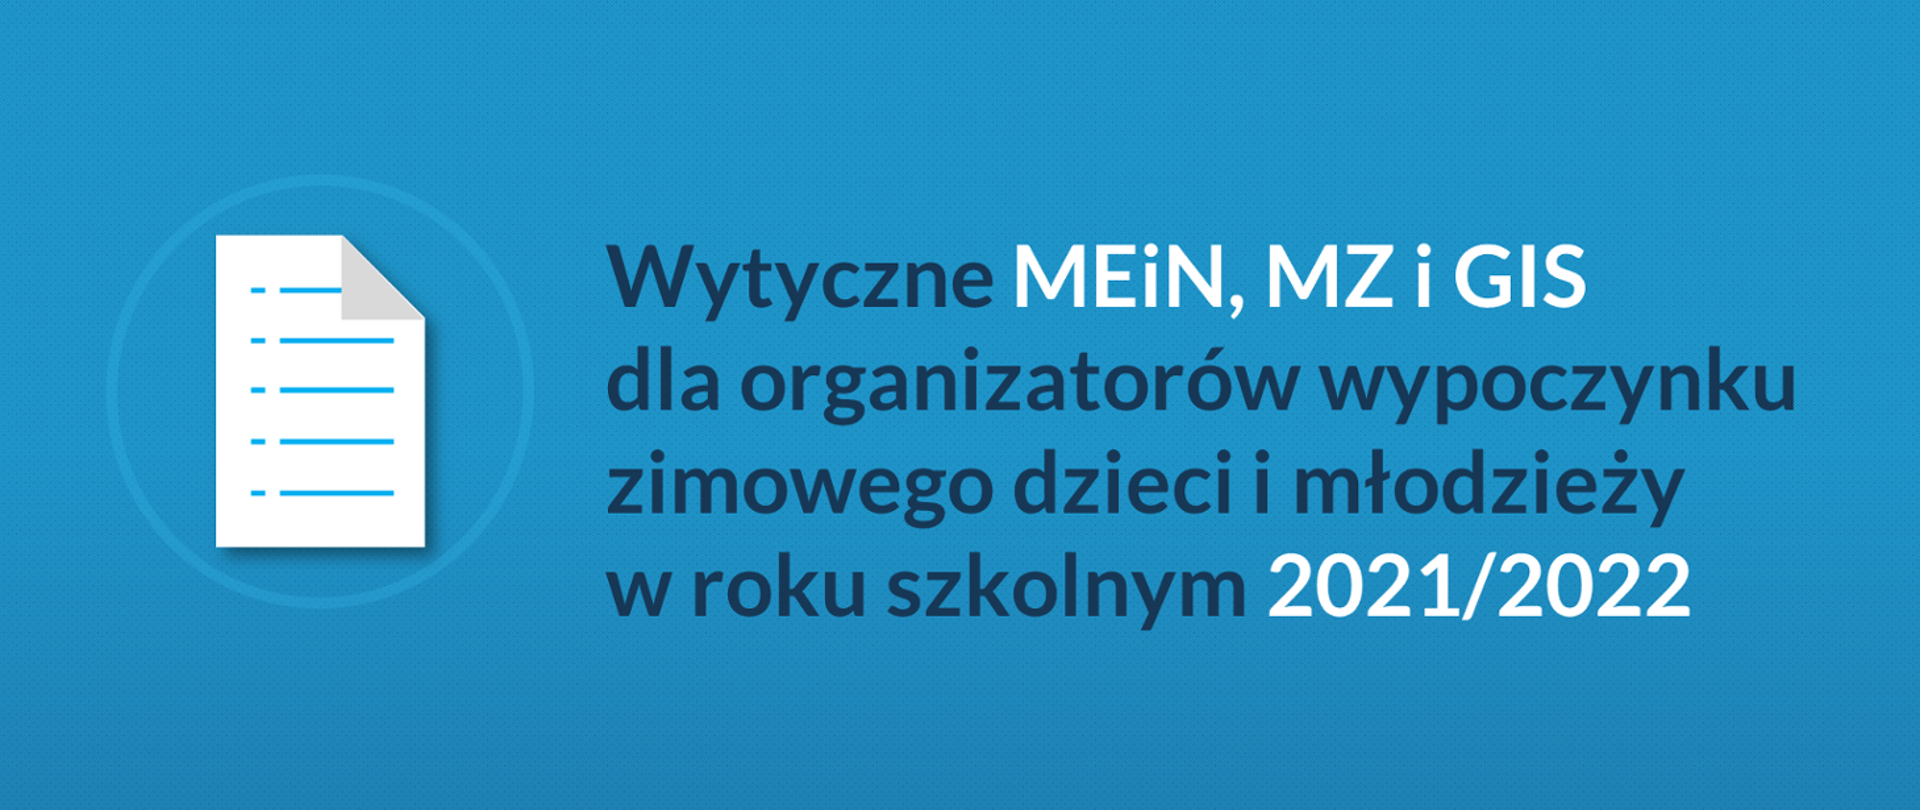 Baner z napisem Wytyczne MEiN, MZ i GIS dla organizatorów wypoczynku zimowego dzieci i młodzieży w roku szkolnym 2021/2022